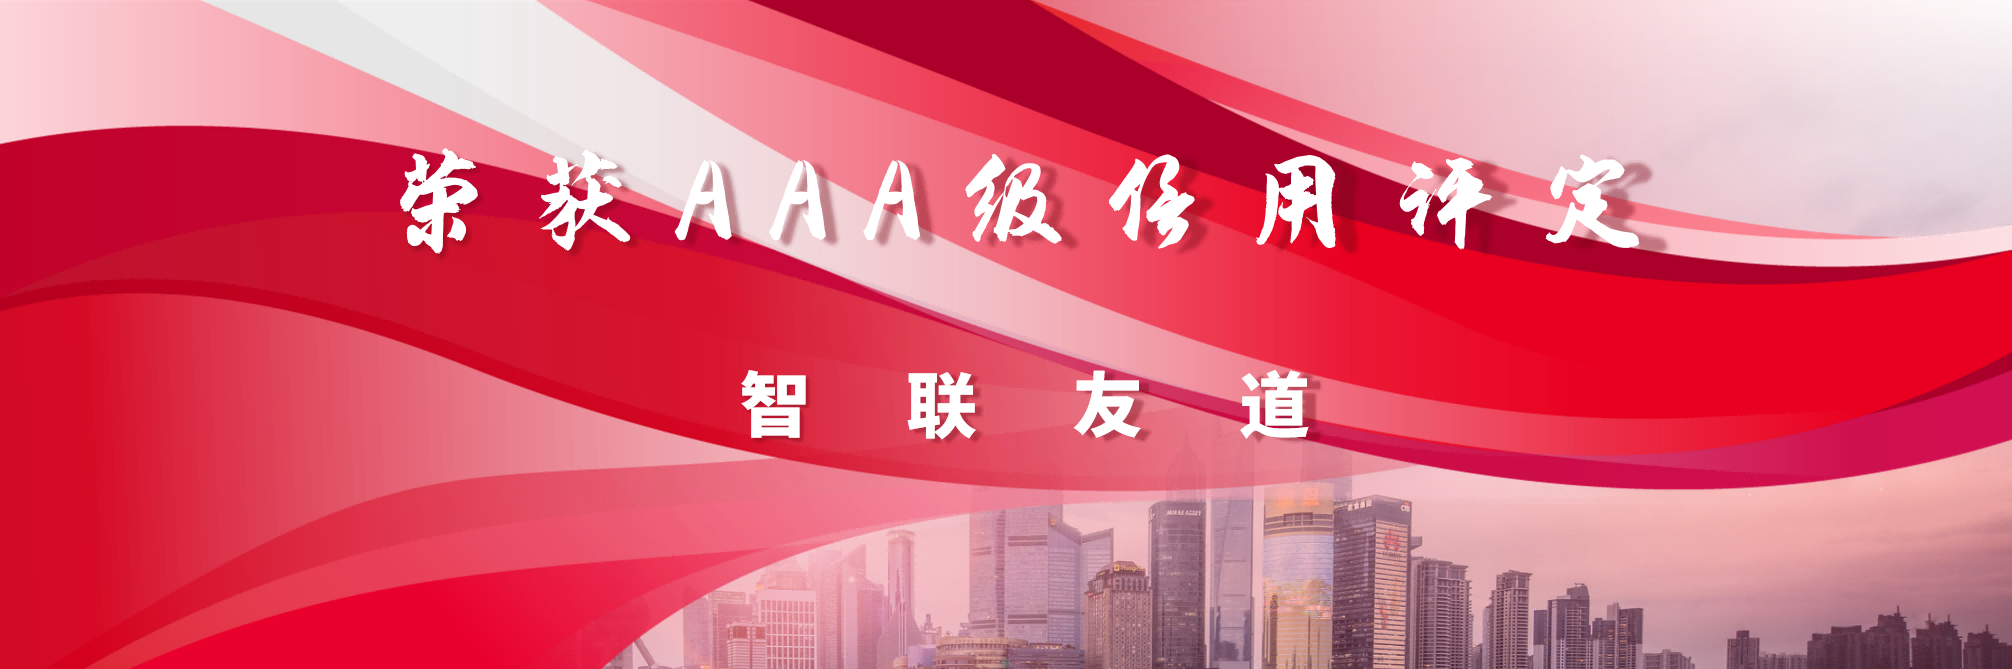 聚焦 | 智联澳门太阳集团城荣获中国软件行业协会AAA级信用评定